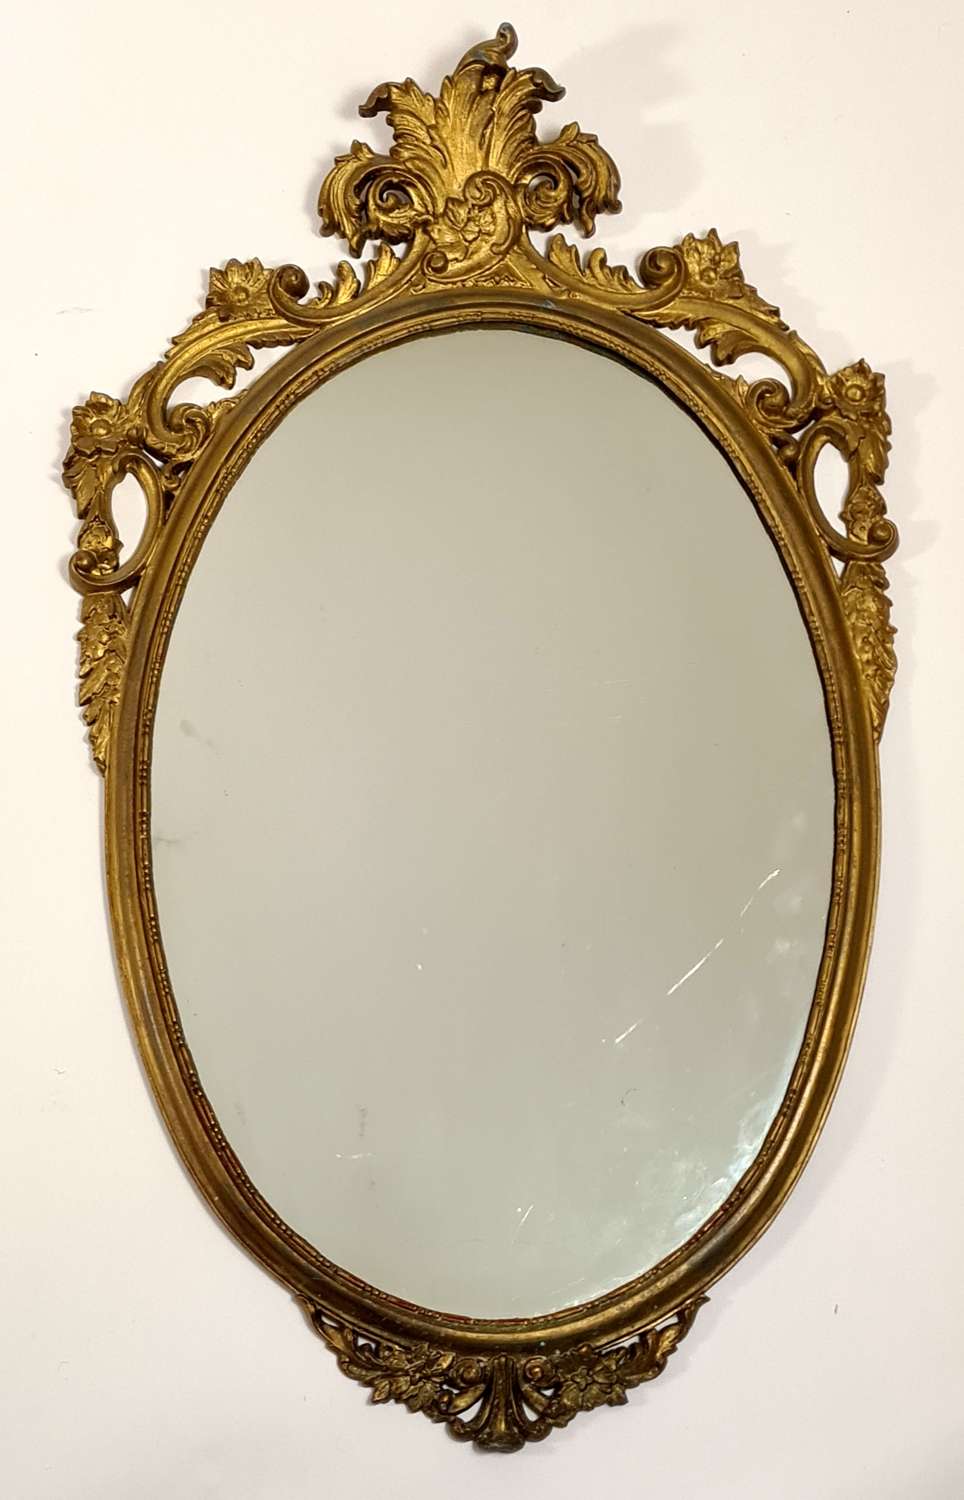 An Italian-Style Mirror